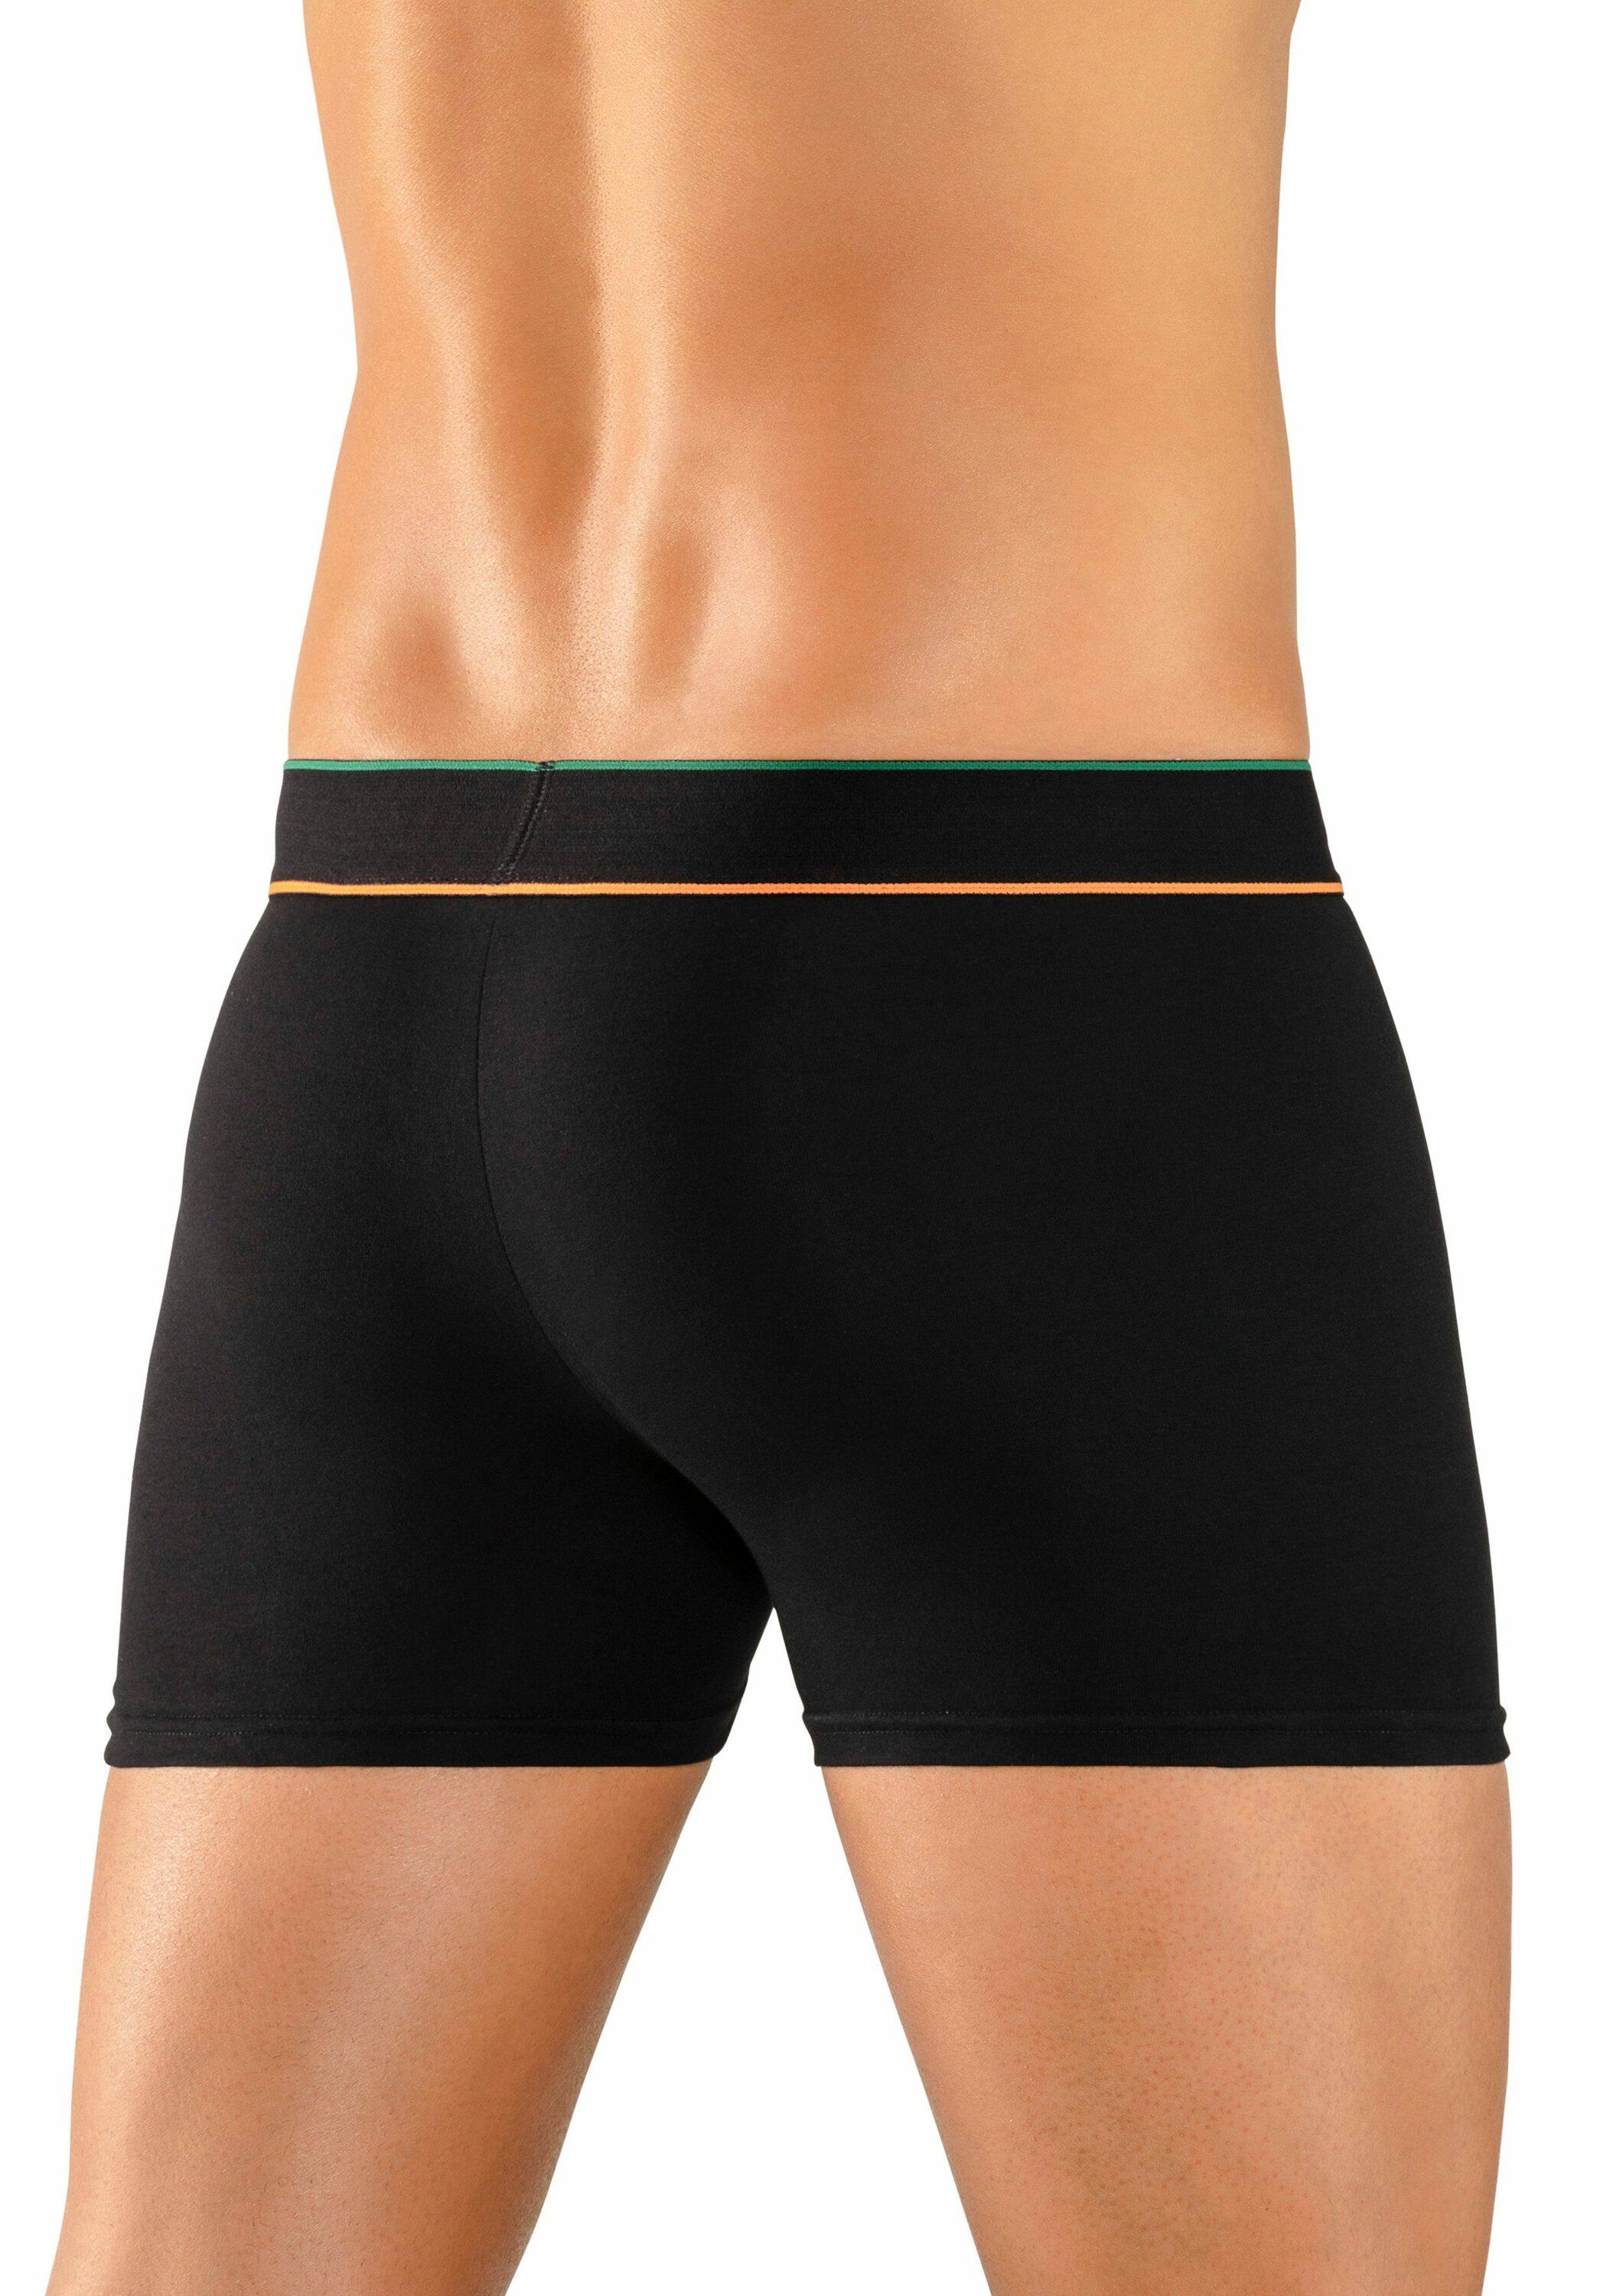 schwarz-grün kaufen schwarz, schwarz-navy, Buffalo Online SportScheck Shop Unterhose von Herren im